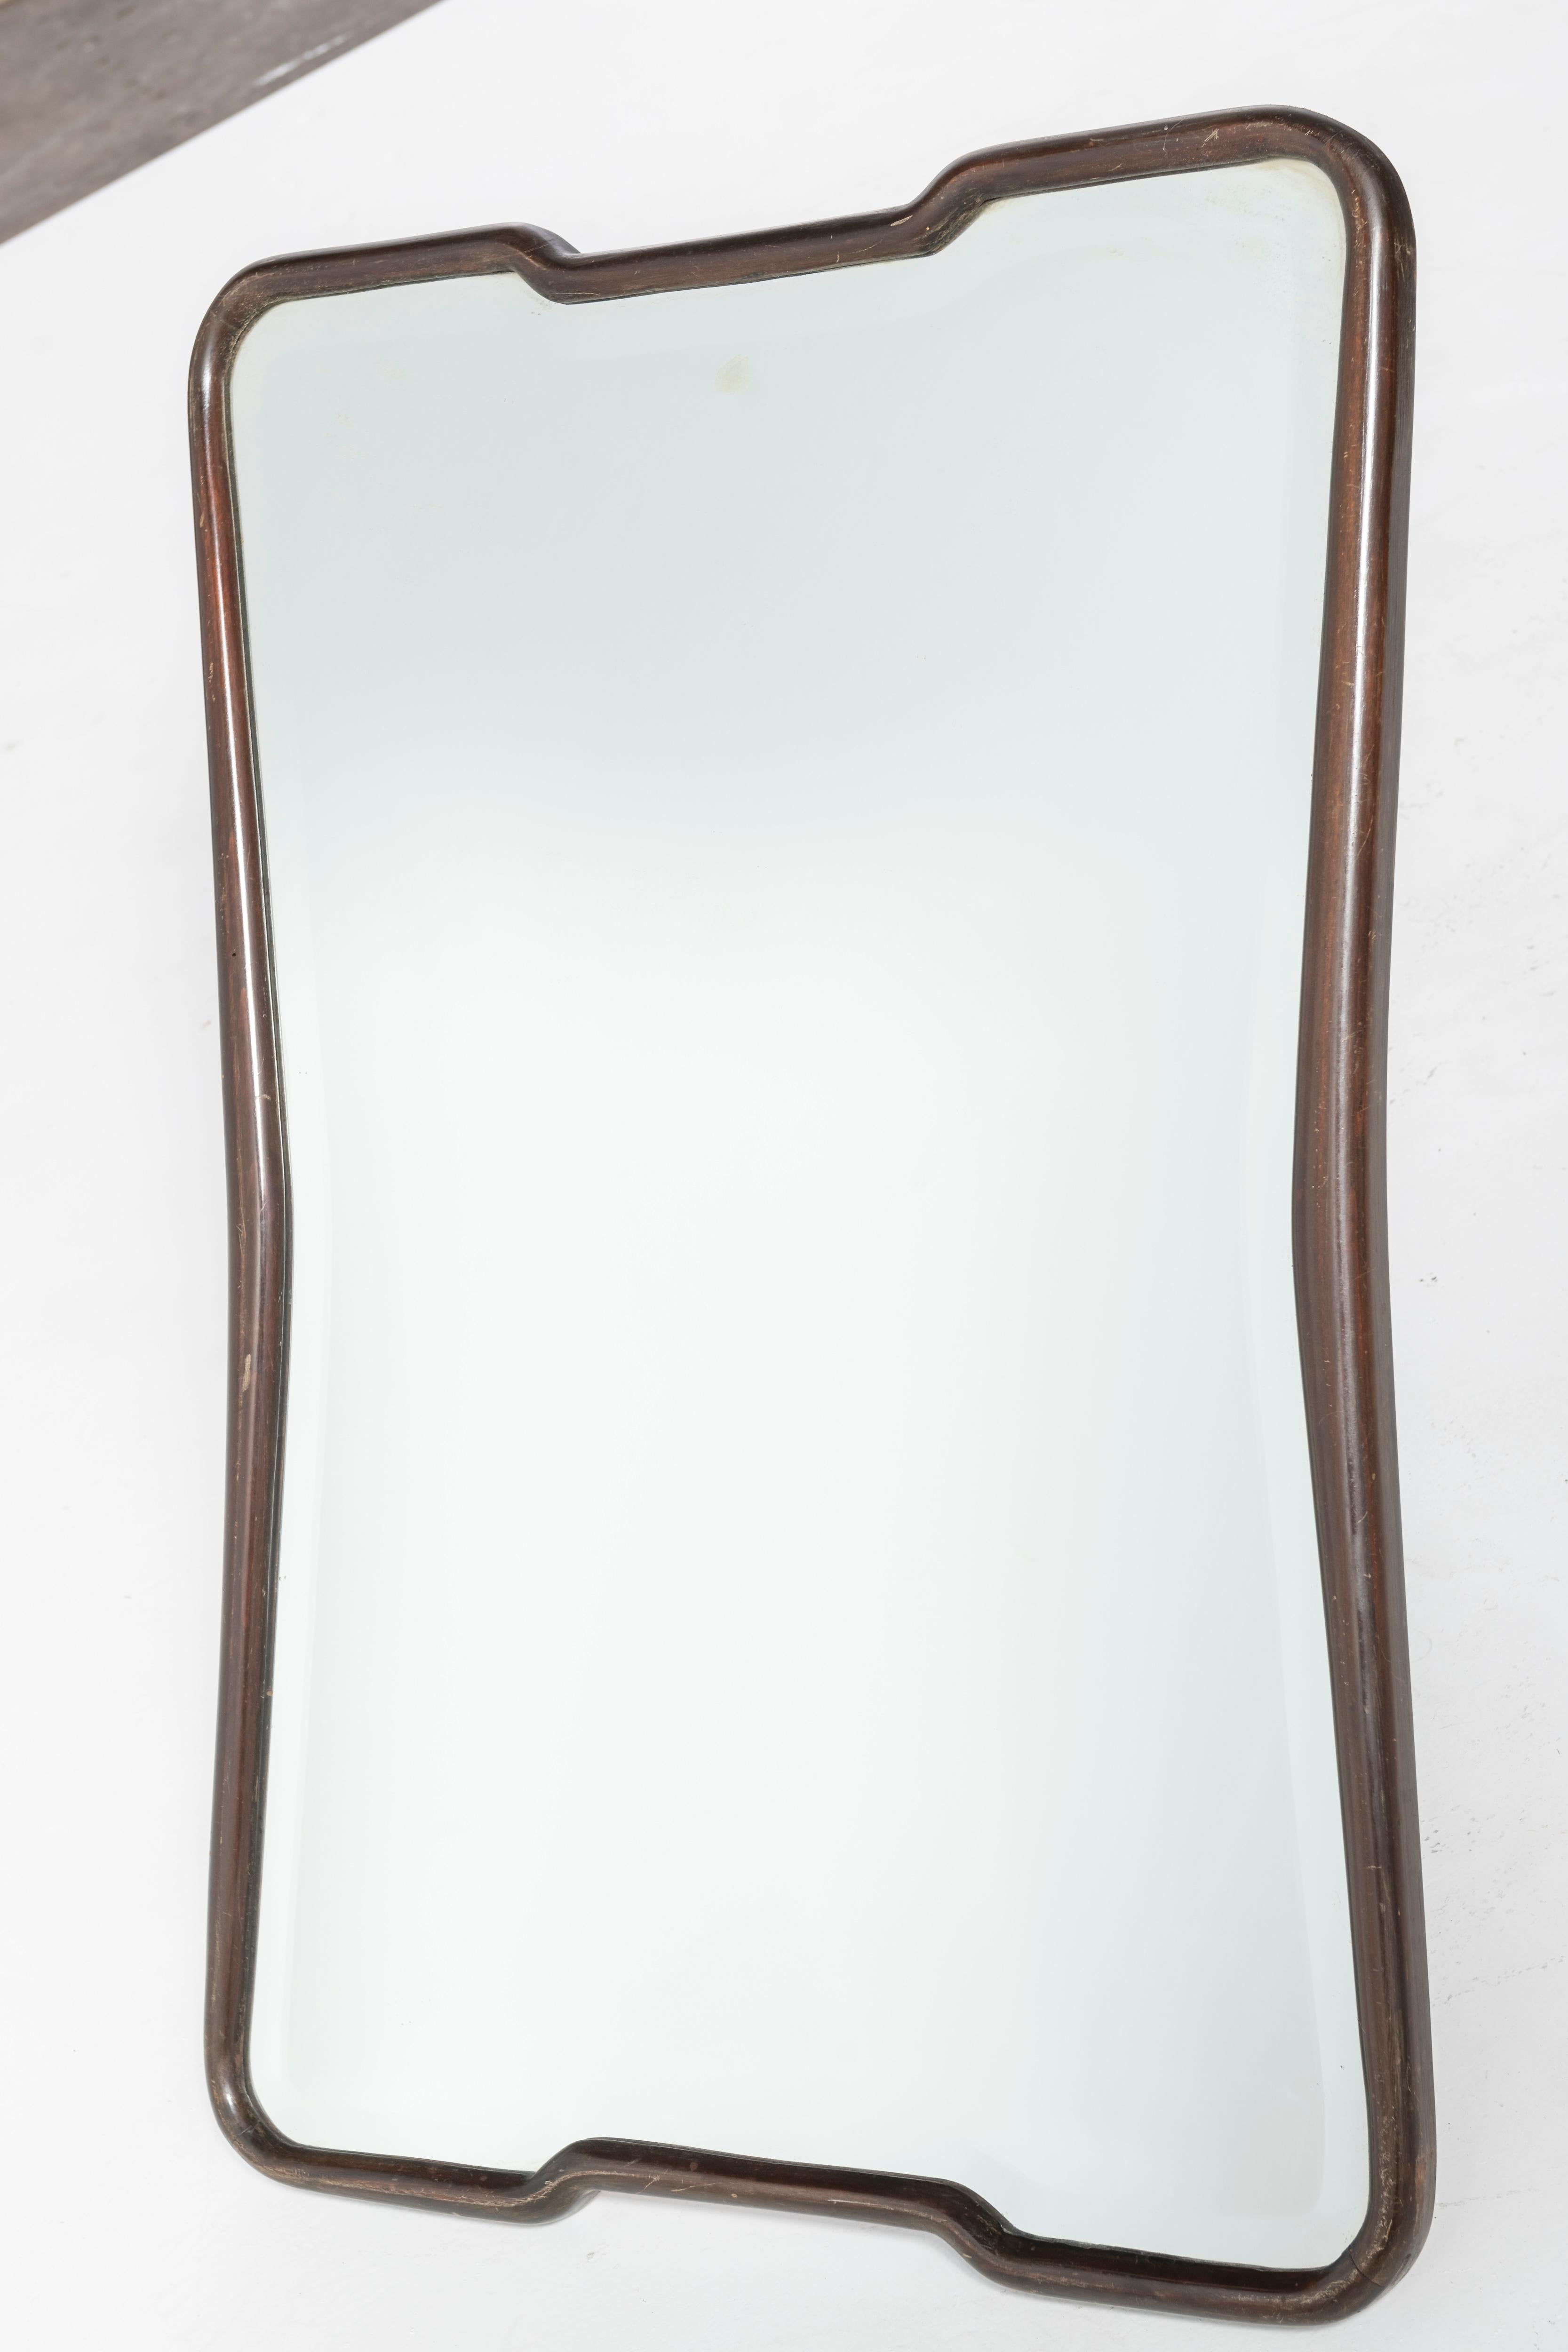 Crystal Mid-Century Italian Mirror with Mahogany Frame